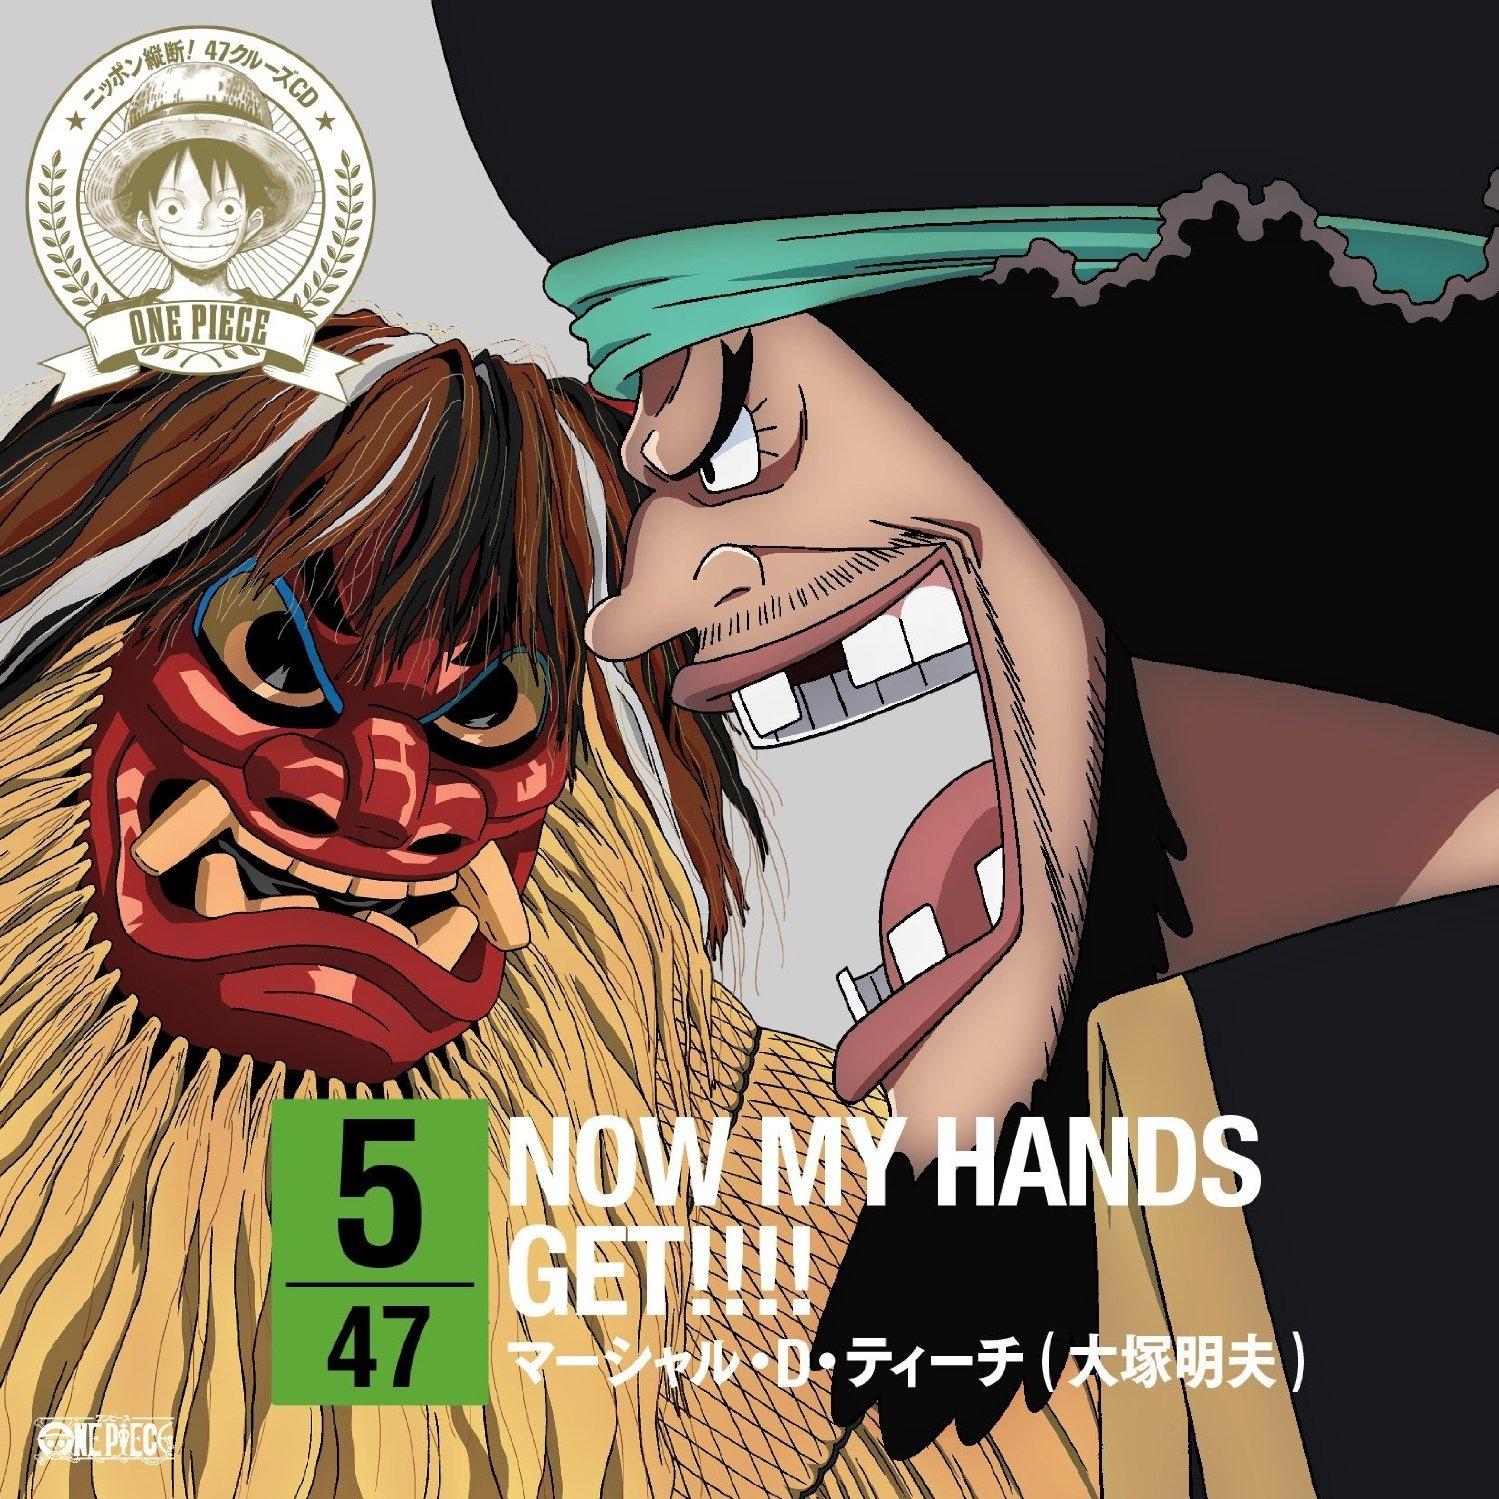 大塚明夫 - NOW MY HANDS GET!!!!